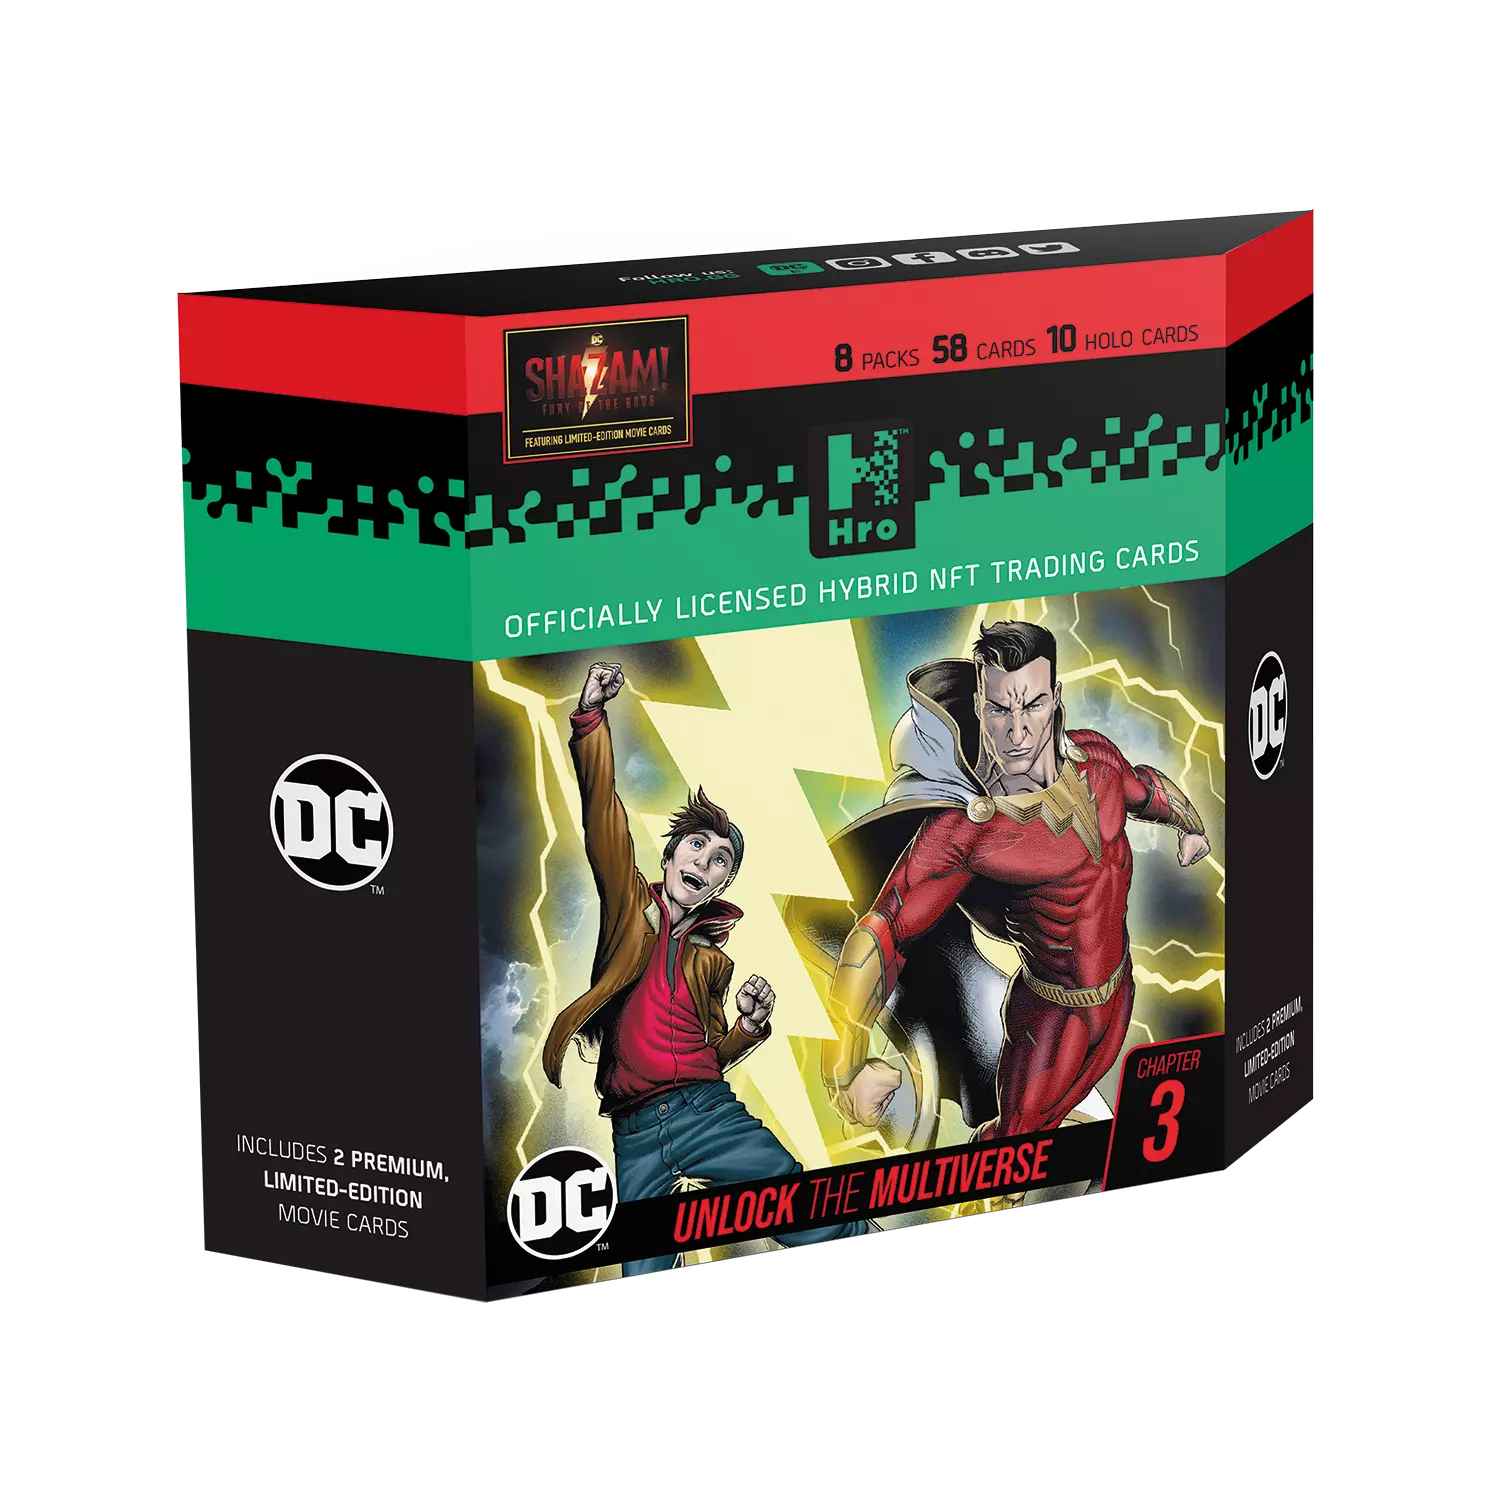 Eine Hro DC Chapter 3 8 pack Schachtel steht mit sichtbarer Vorderseite vor weißem Hintergrund.